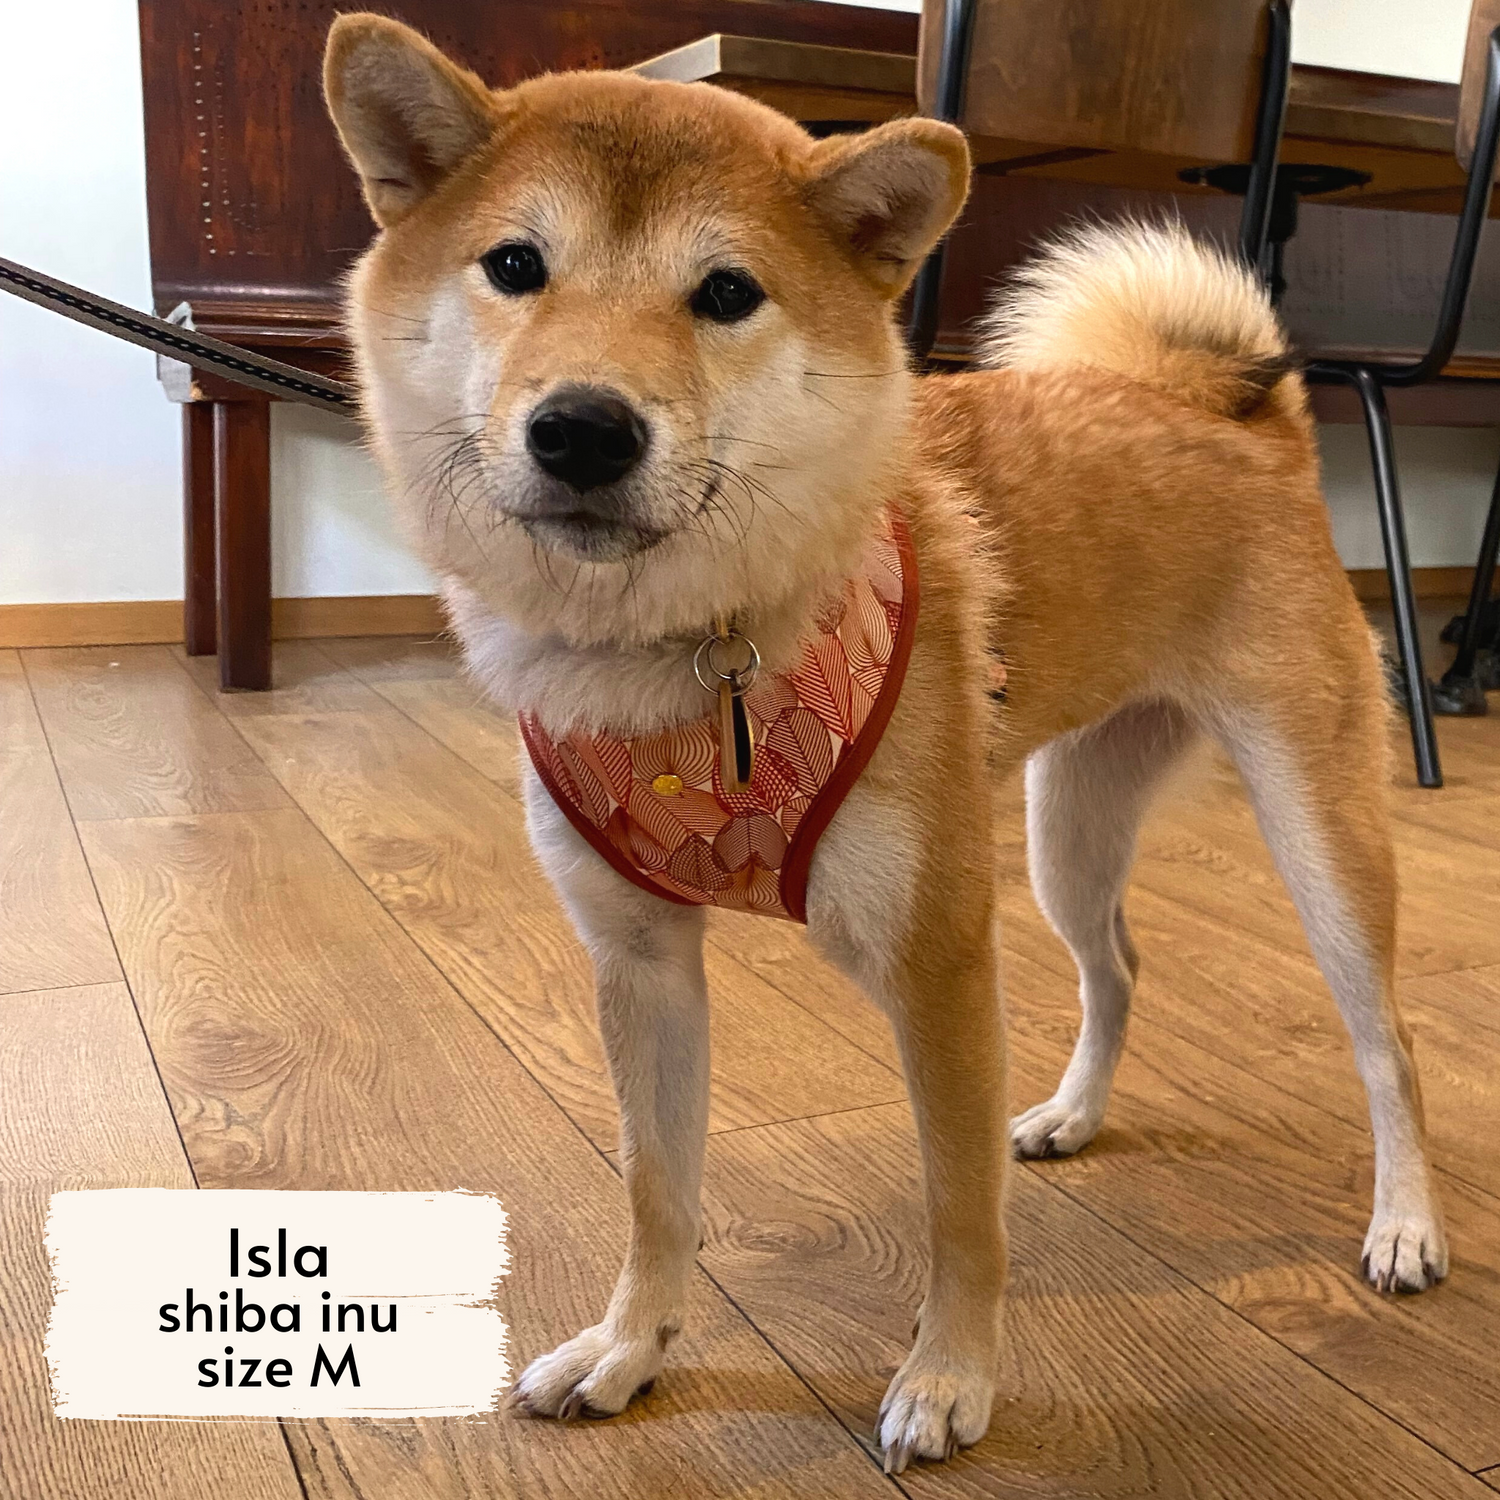 Autumn crunch harness worn by a medium-sized dog, Isla, a Shiba Inu